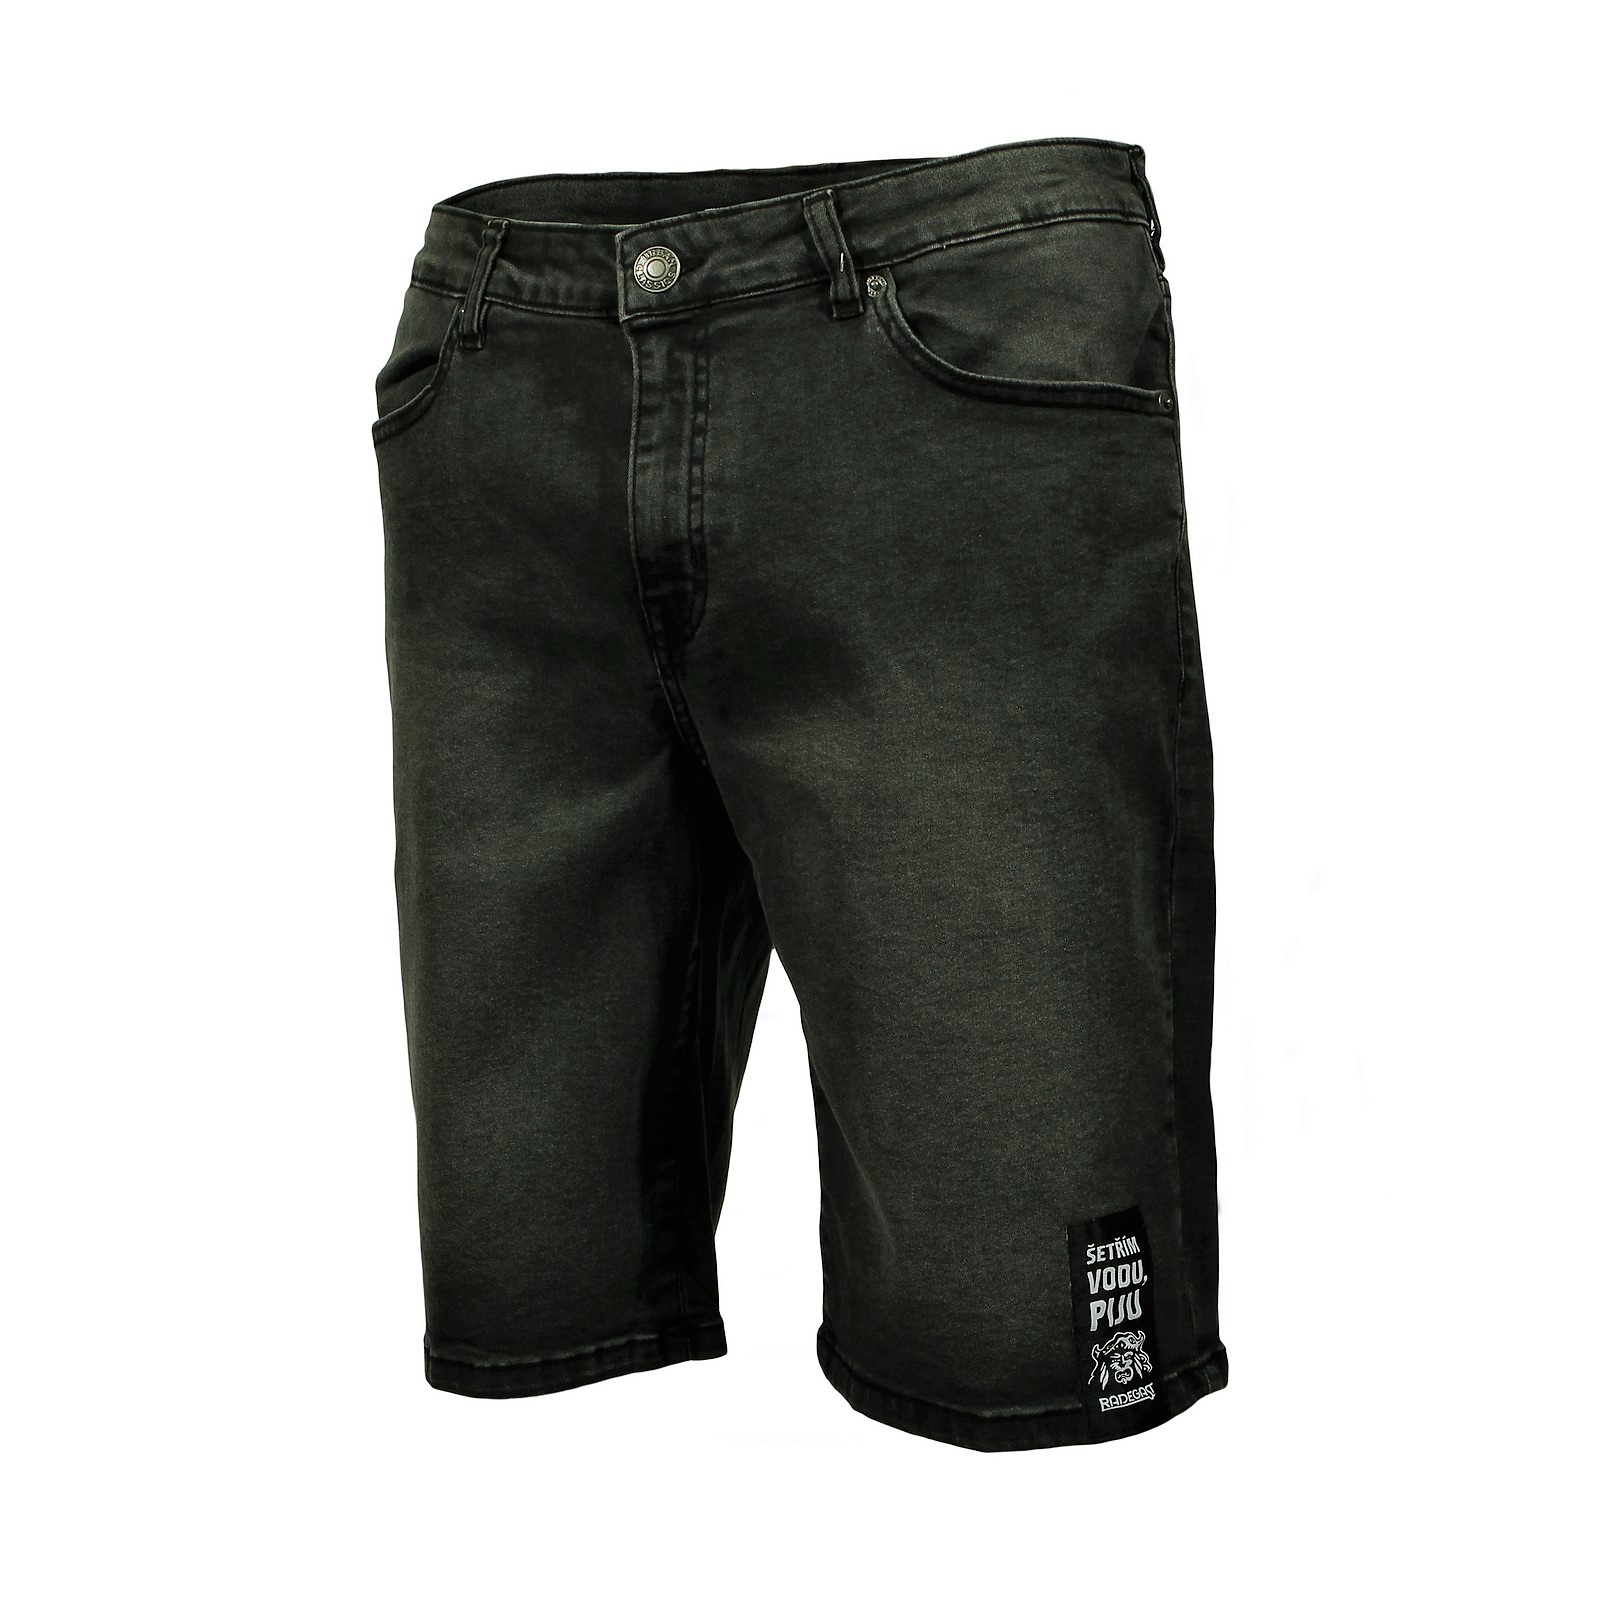 Herren Jeans-Shorts Radegast